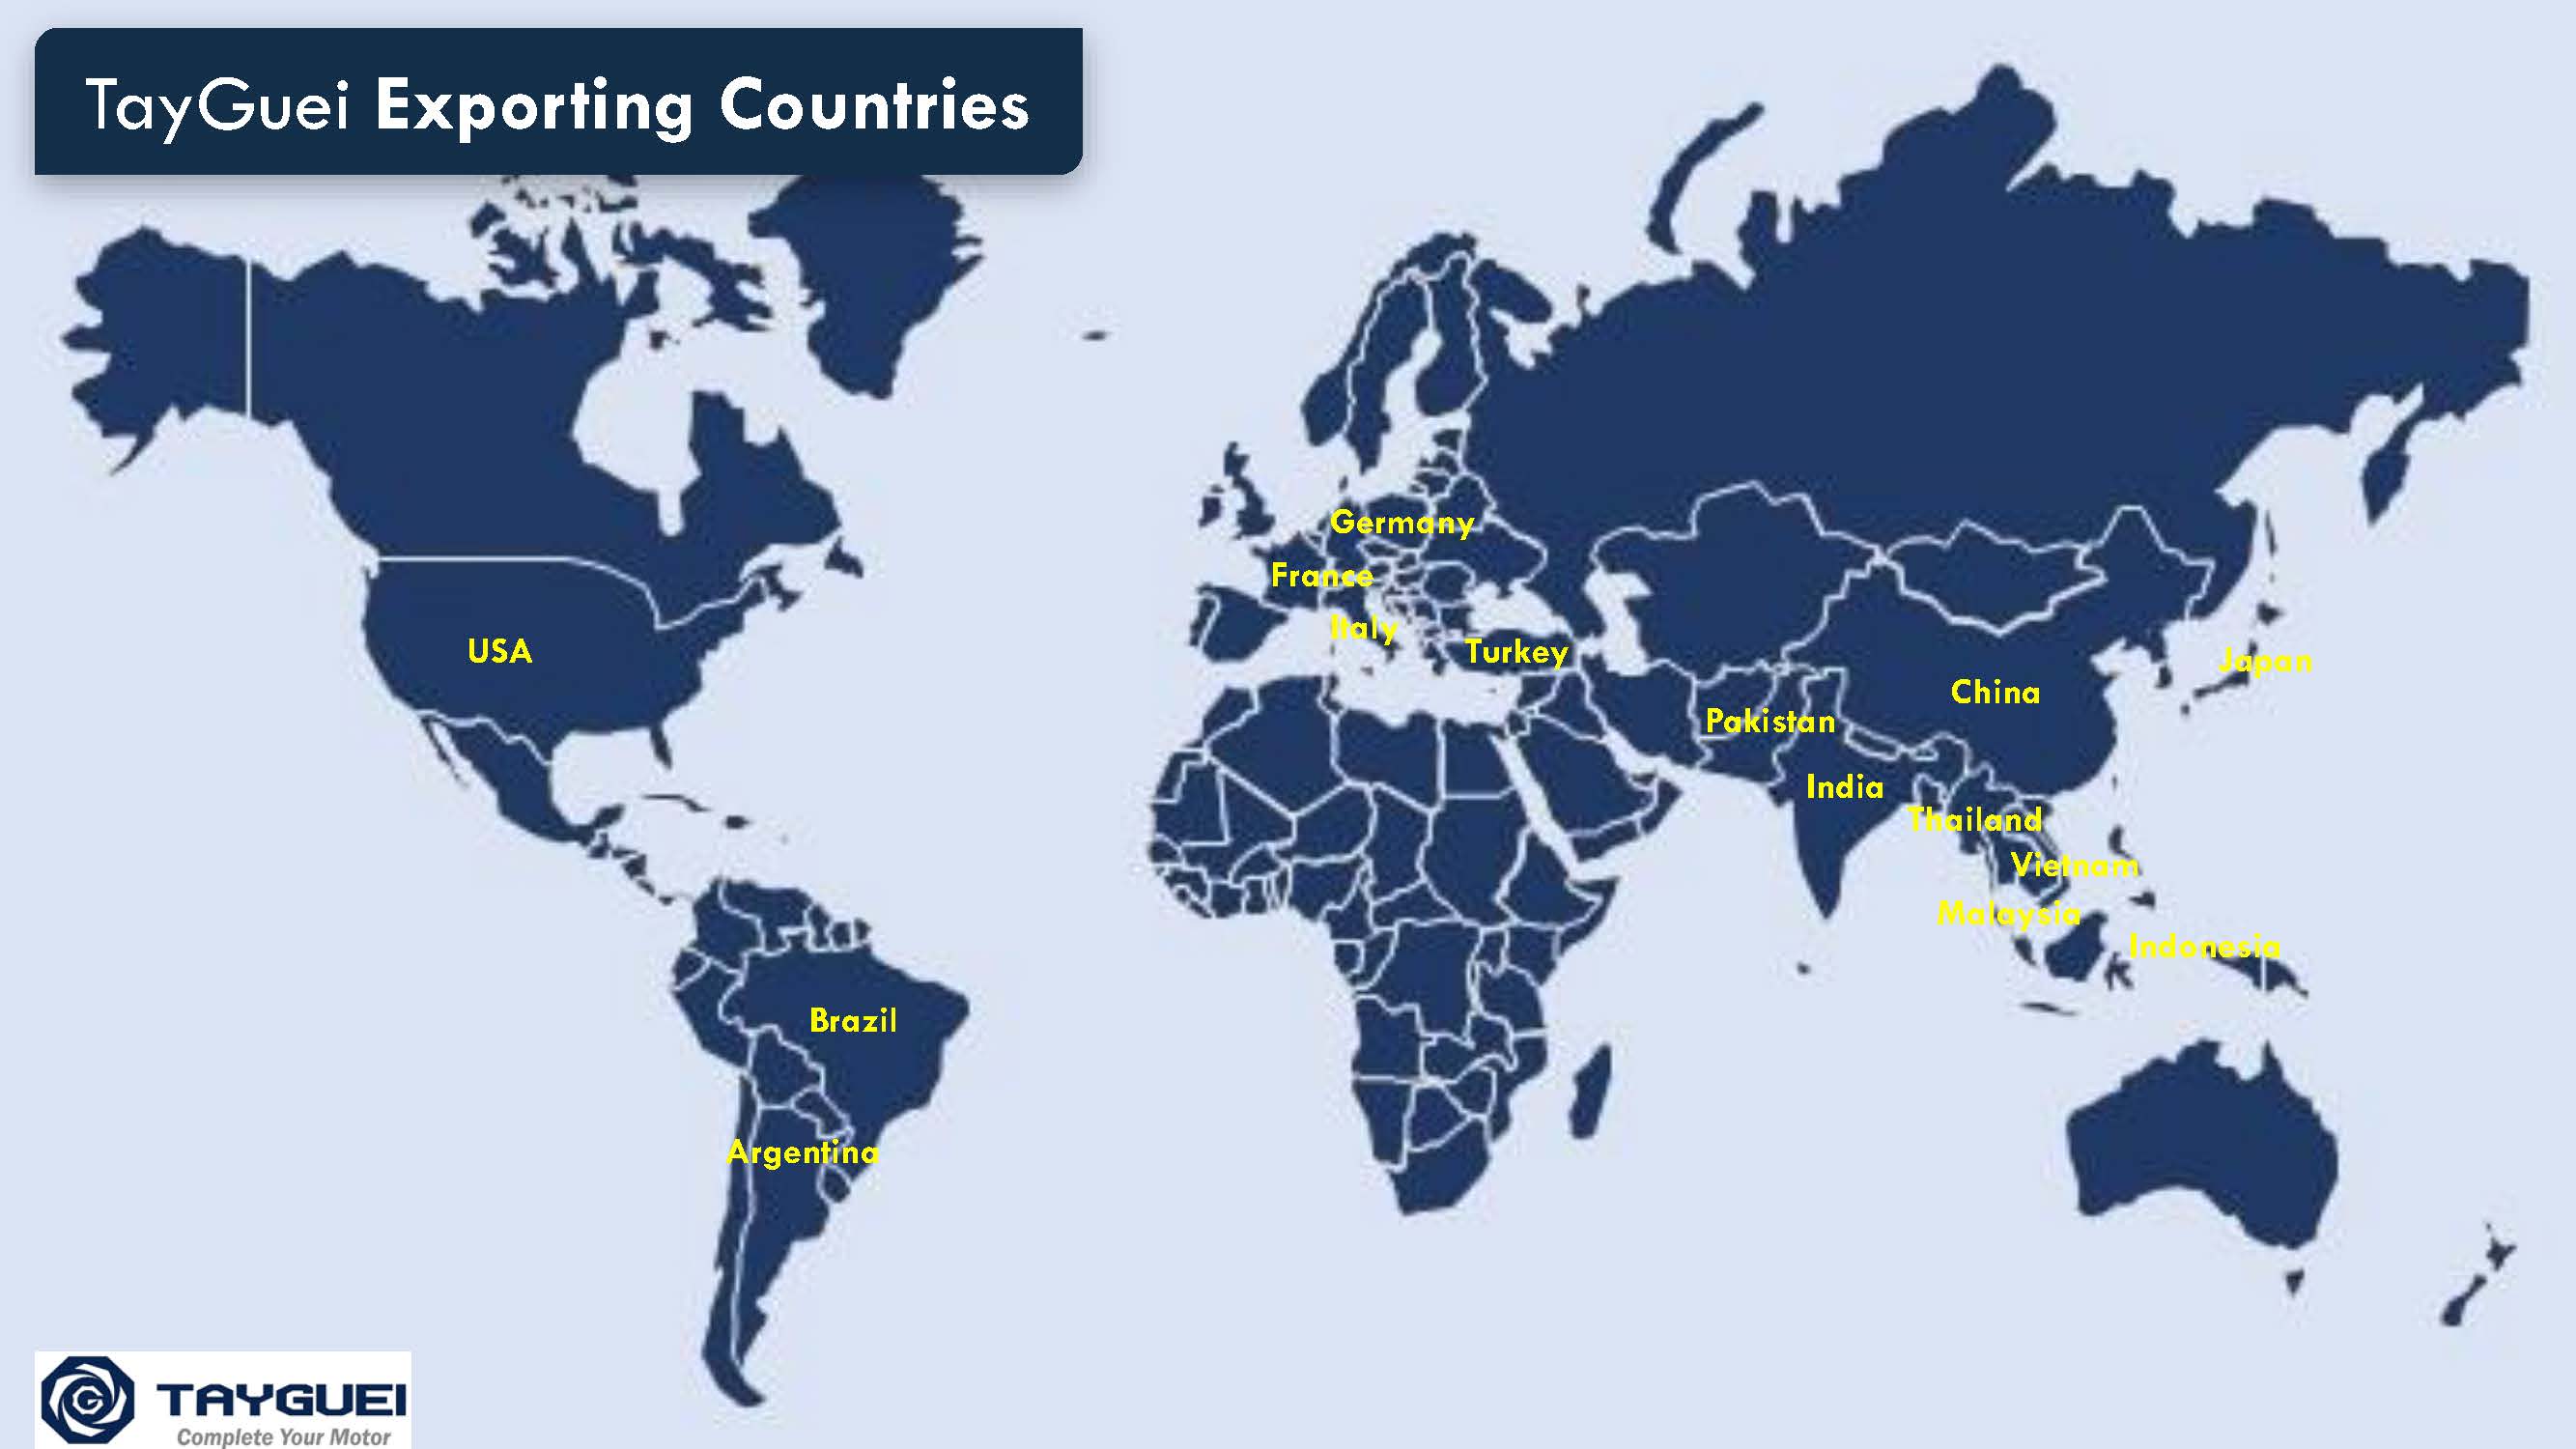 Sản phẩm được xuất khẩu đến hơn 15 quốc gia trên toàn thế giới.